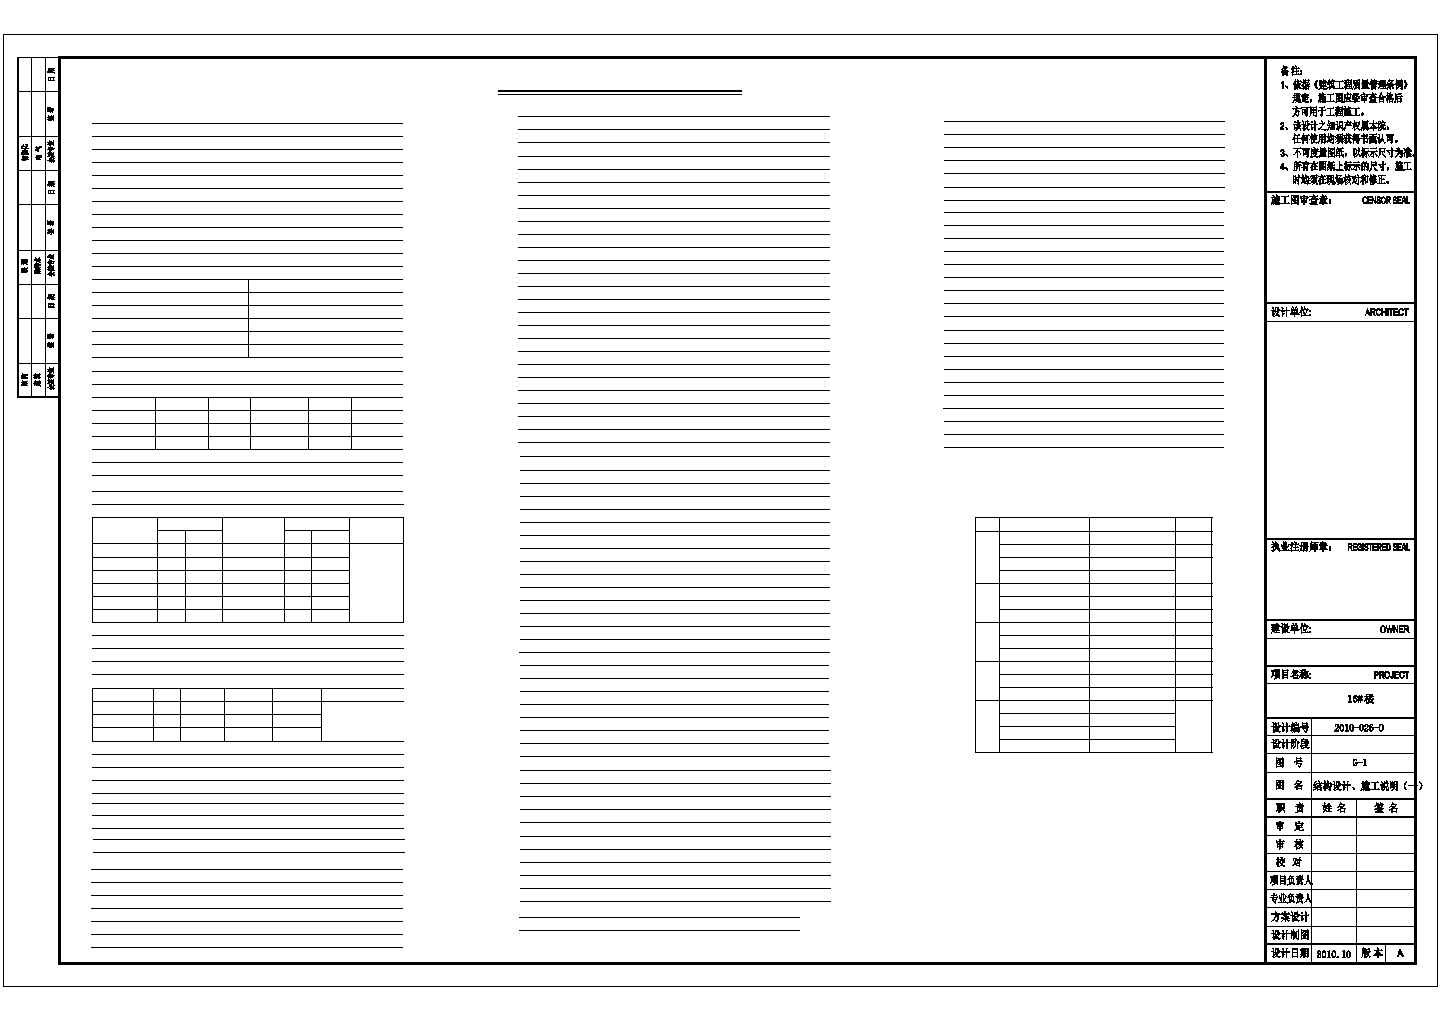 25层剪力墙住宅结构施工图(桩筏基础、两栋)